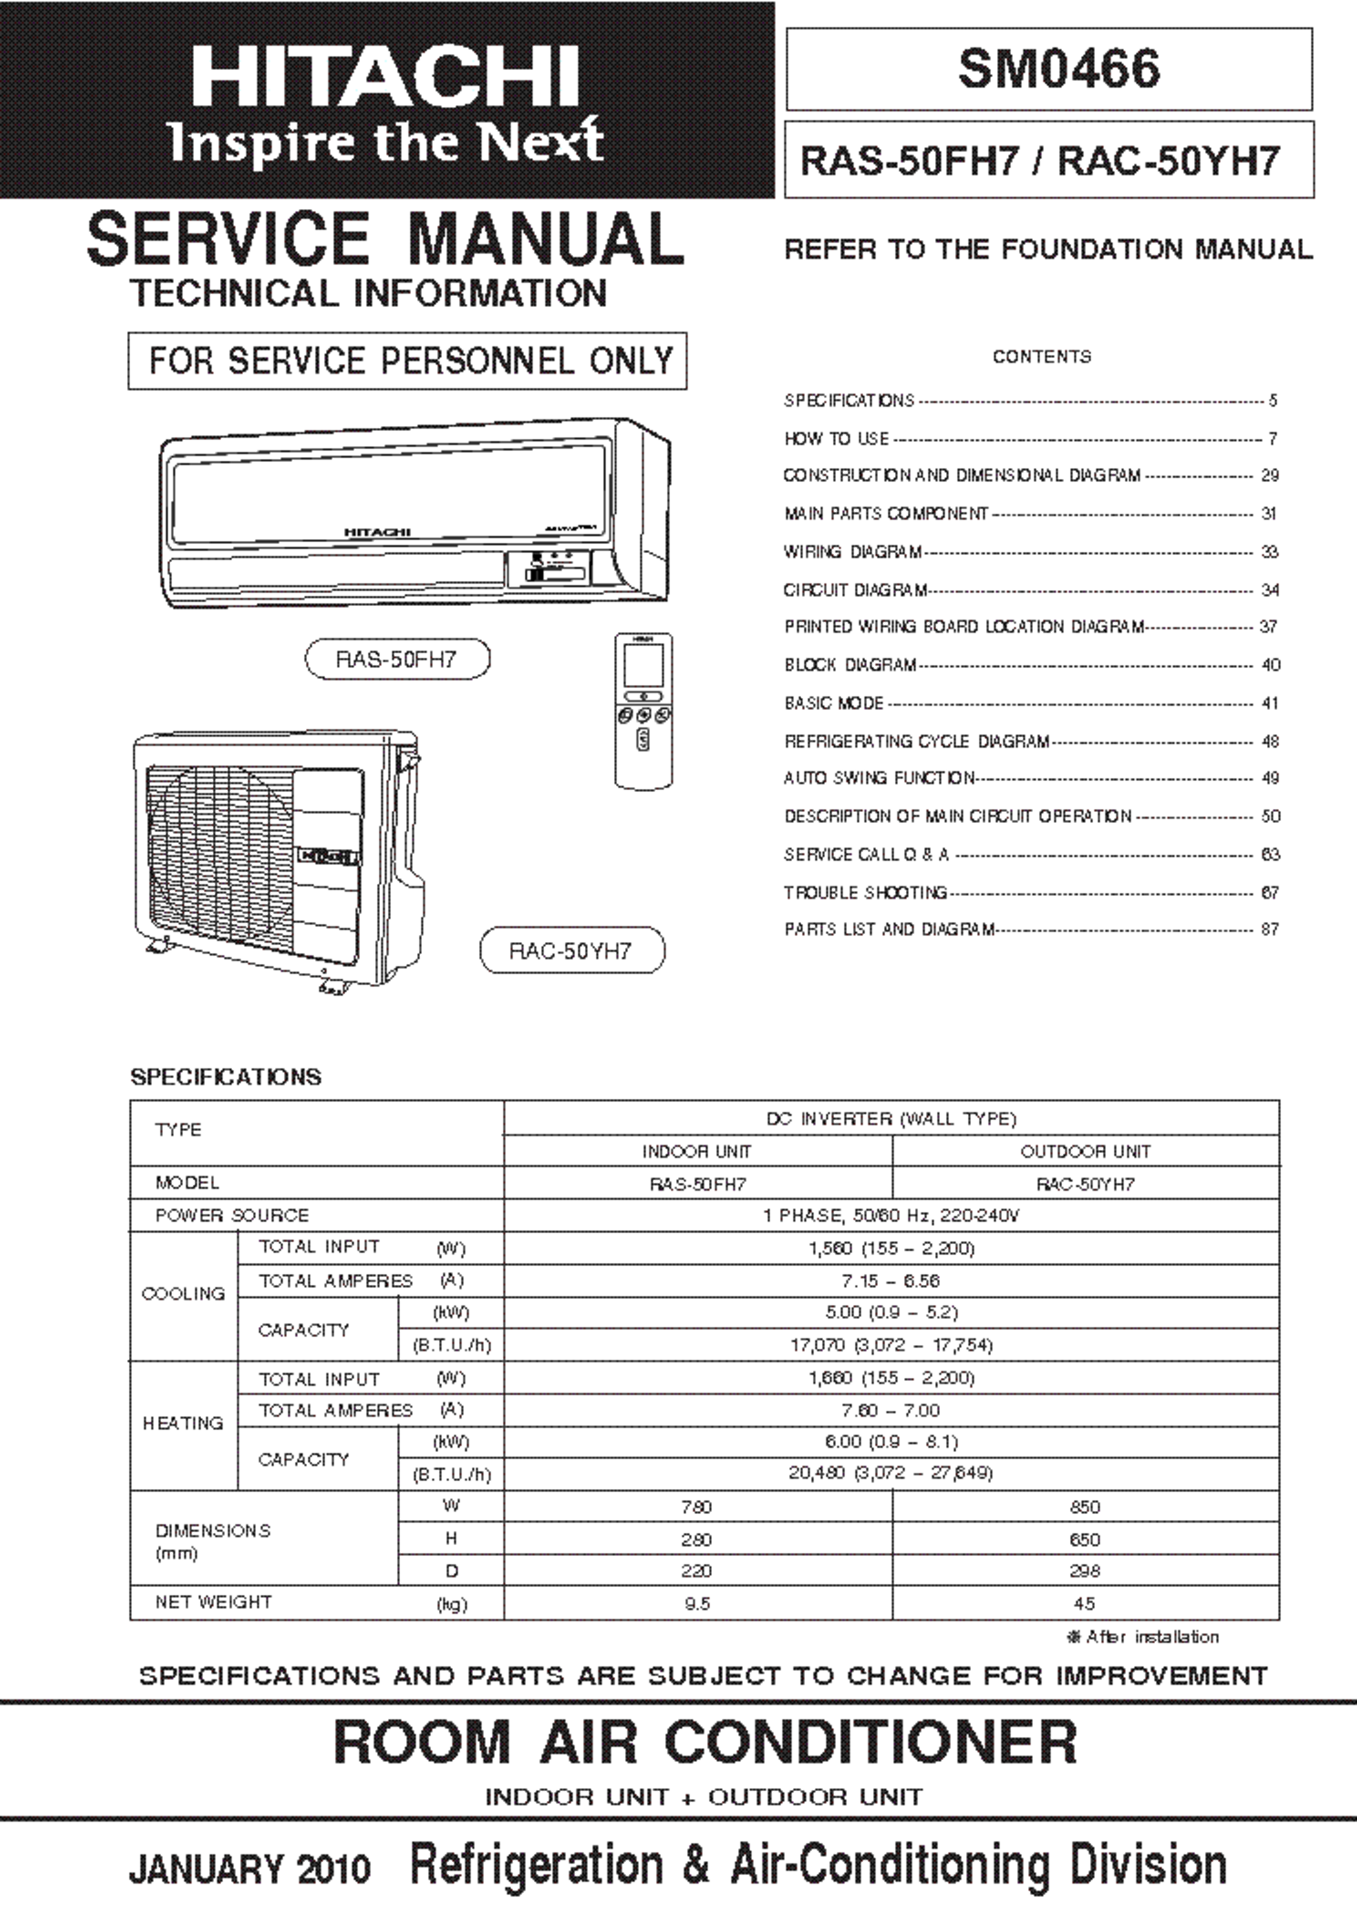 Hitachi RAC-50YH6 Mono split air conditioning unit with outside unit dimensions 850 x 298 x 650mm ( - Bild 2 aus 2